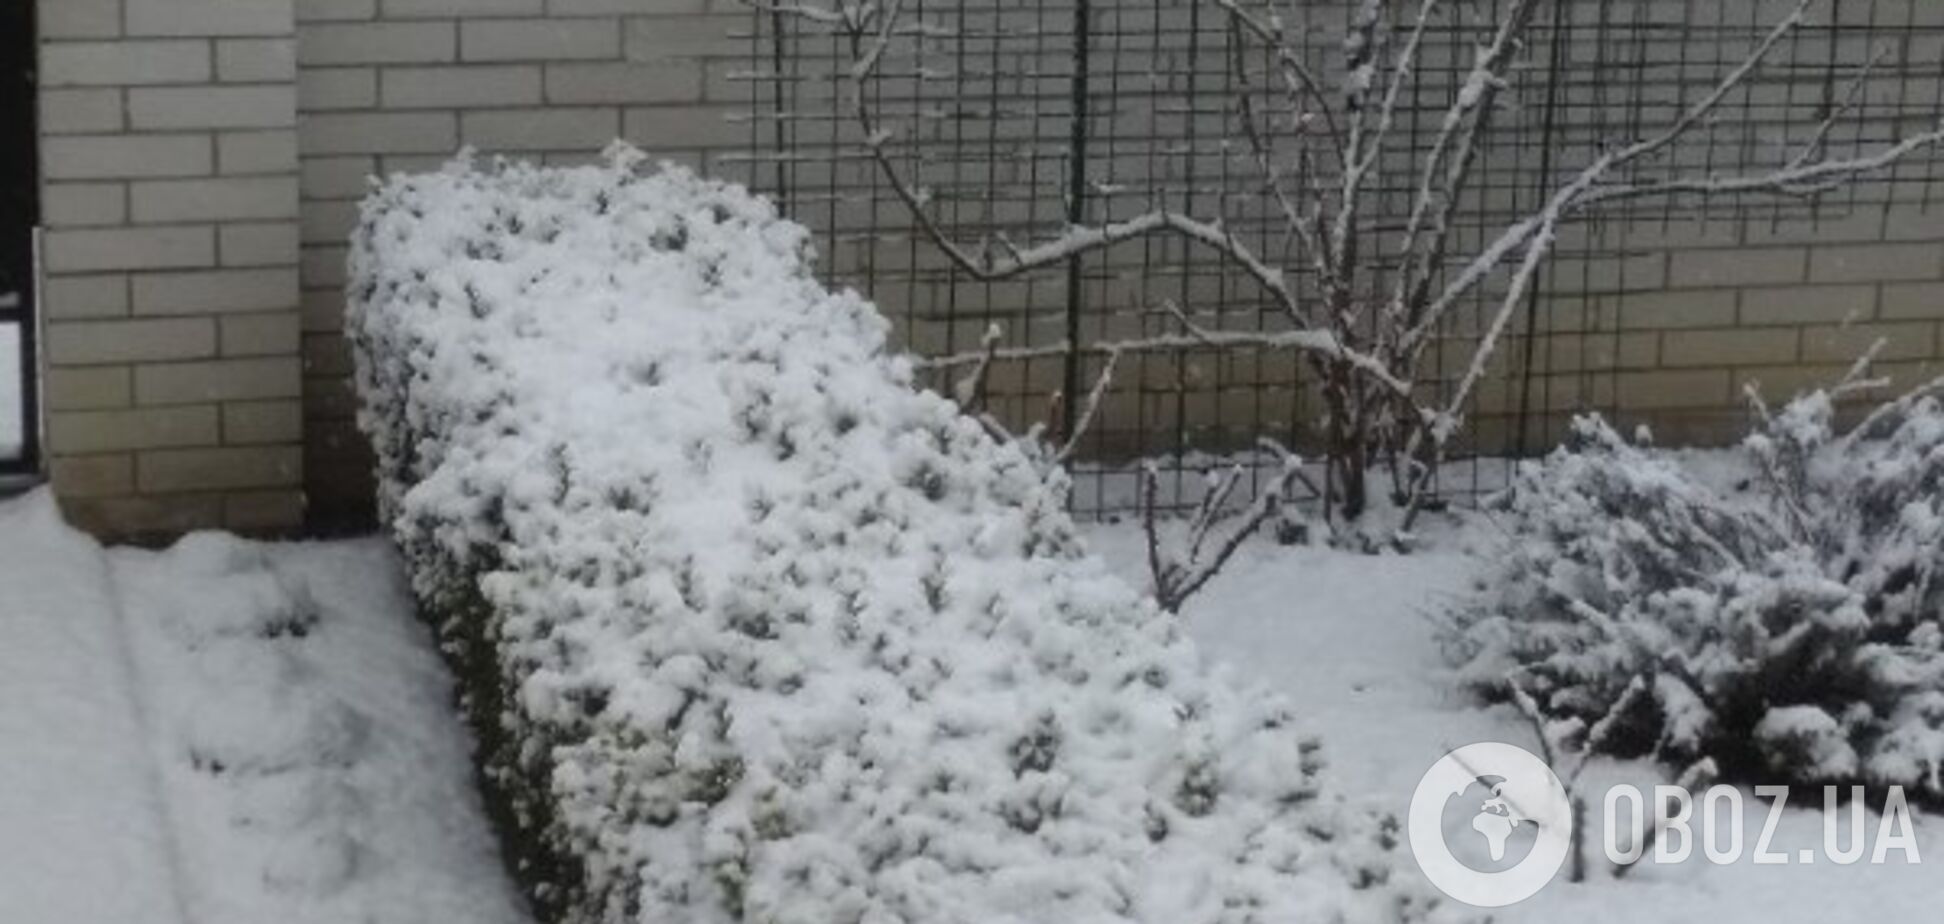 'З Новим роком!' Київ посеред весни засипало снігом. Фото і відео